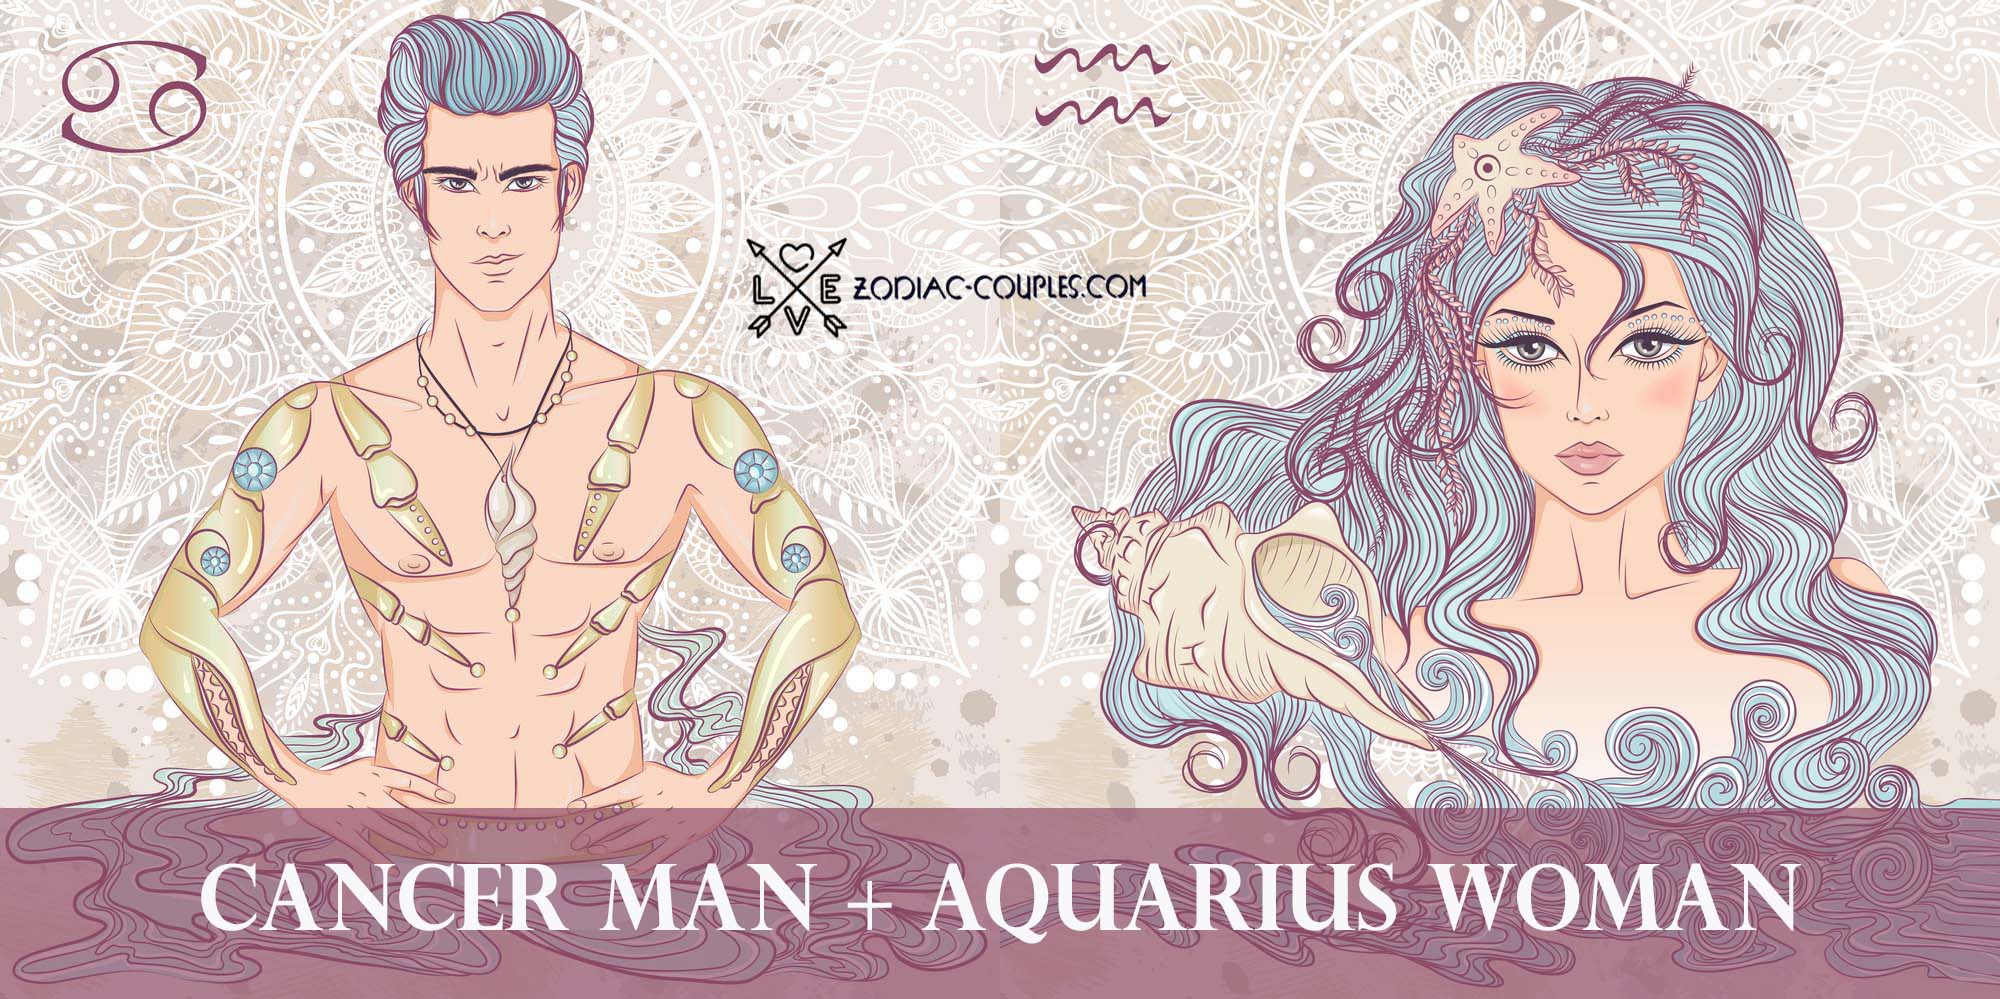 Aquarius woman and aquarius man